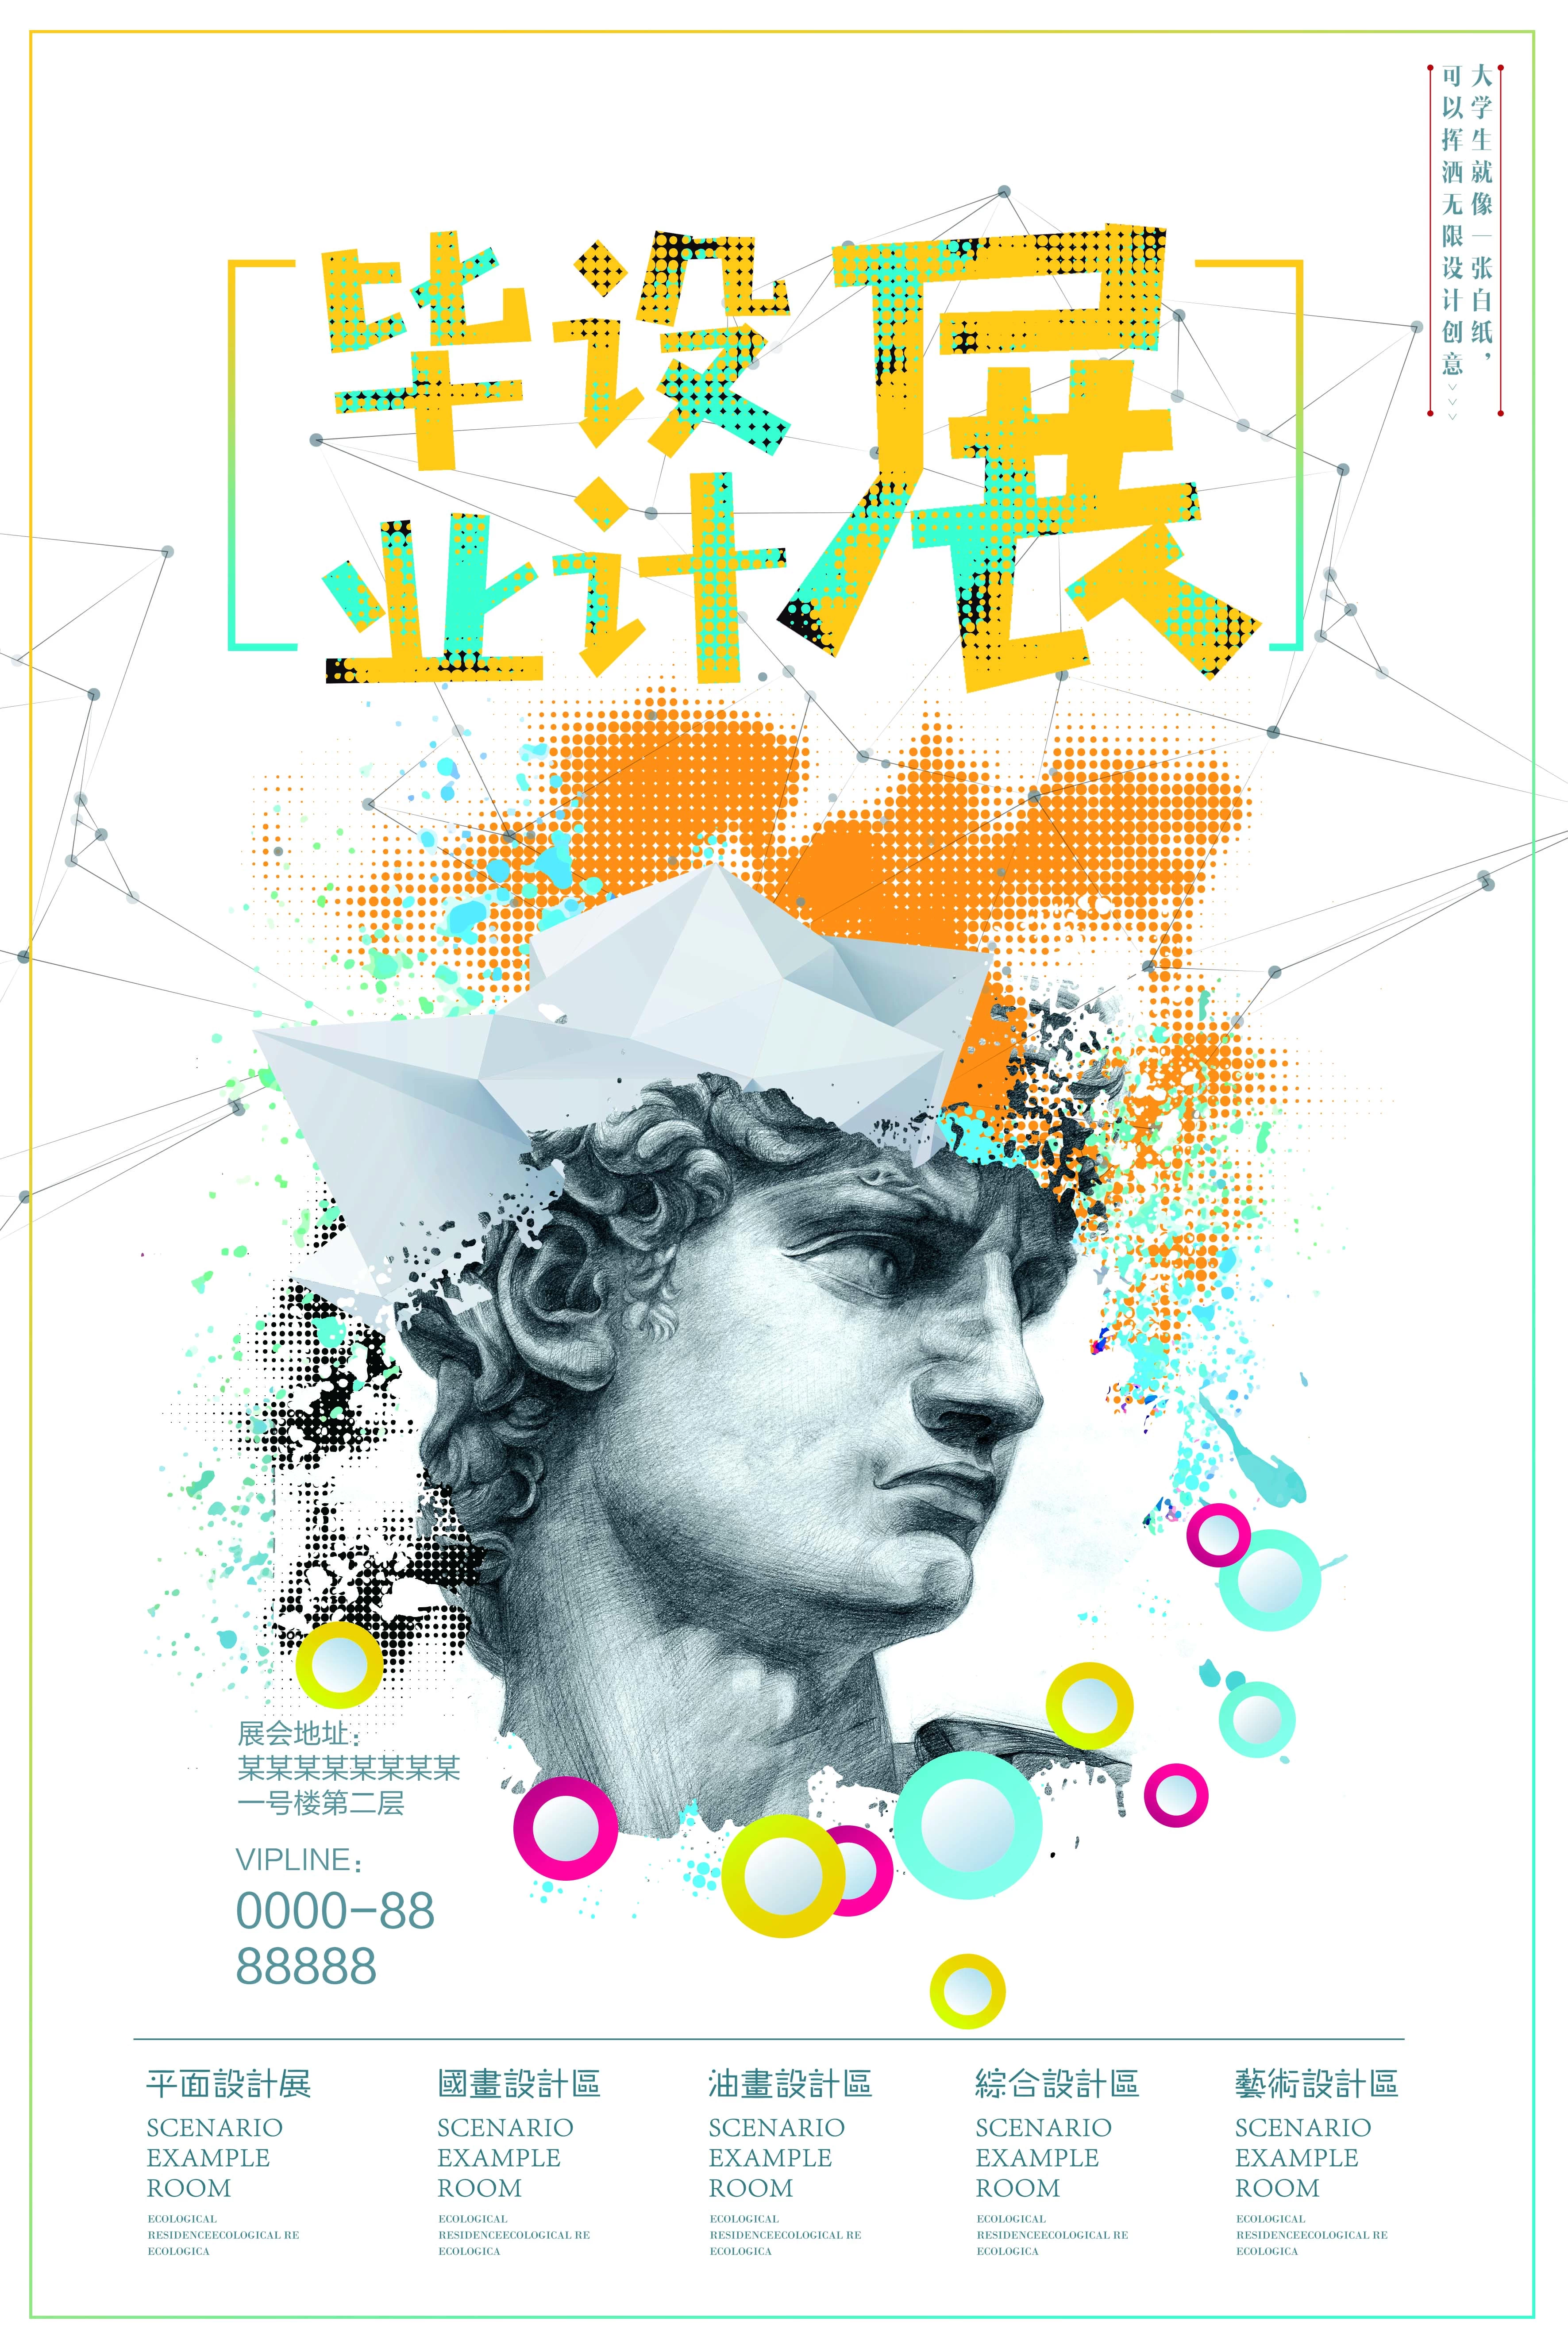 高端创意展会艺术展毕业展作品集摄影书画海报AI/PSD设计素材模板【158】